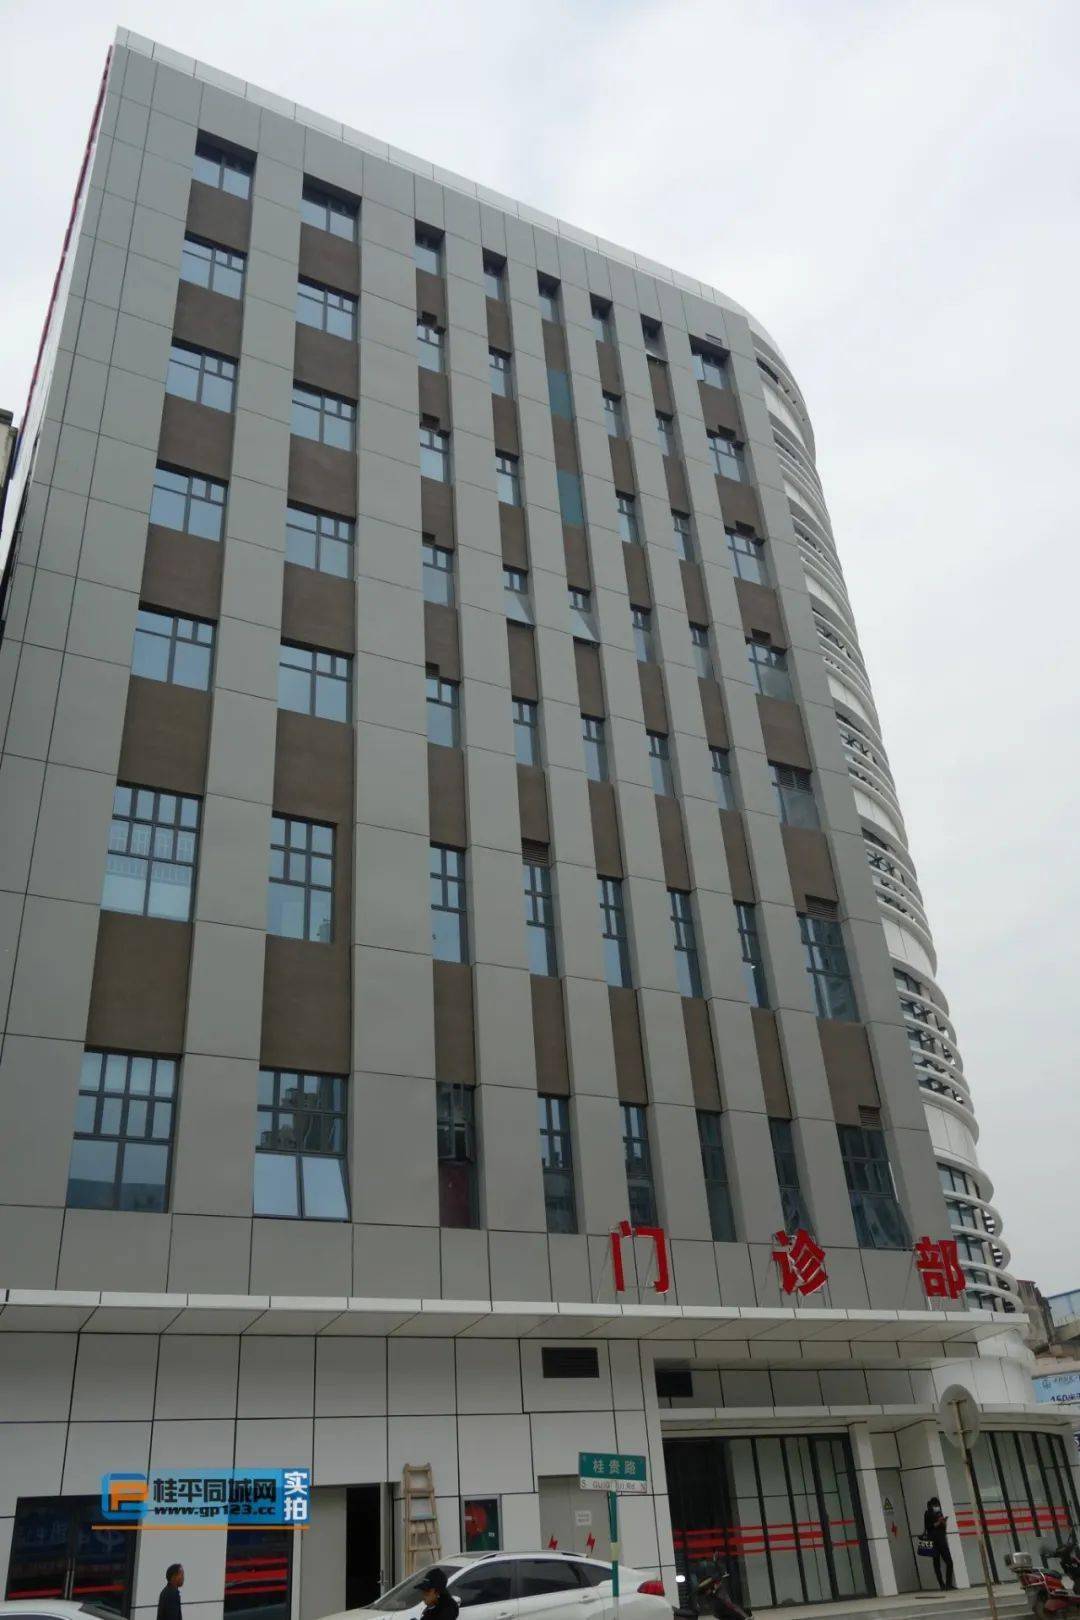 直击桂平市人民医院新门诊楼建设最新进展…就在本月启用!